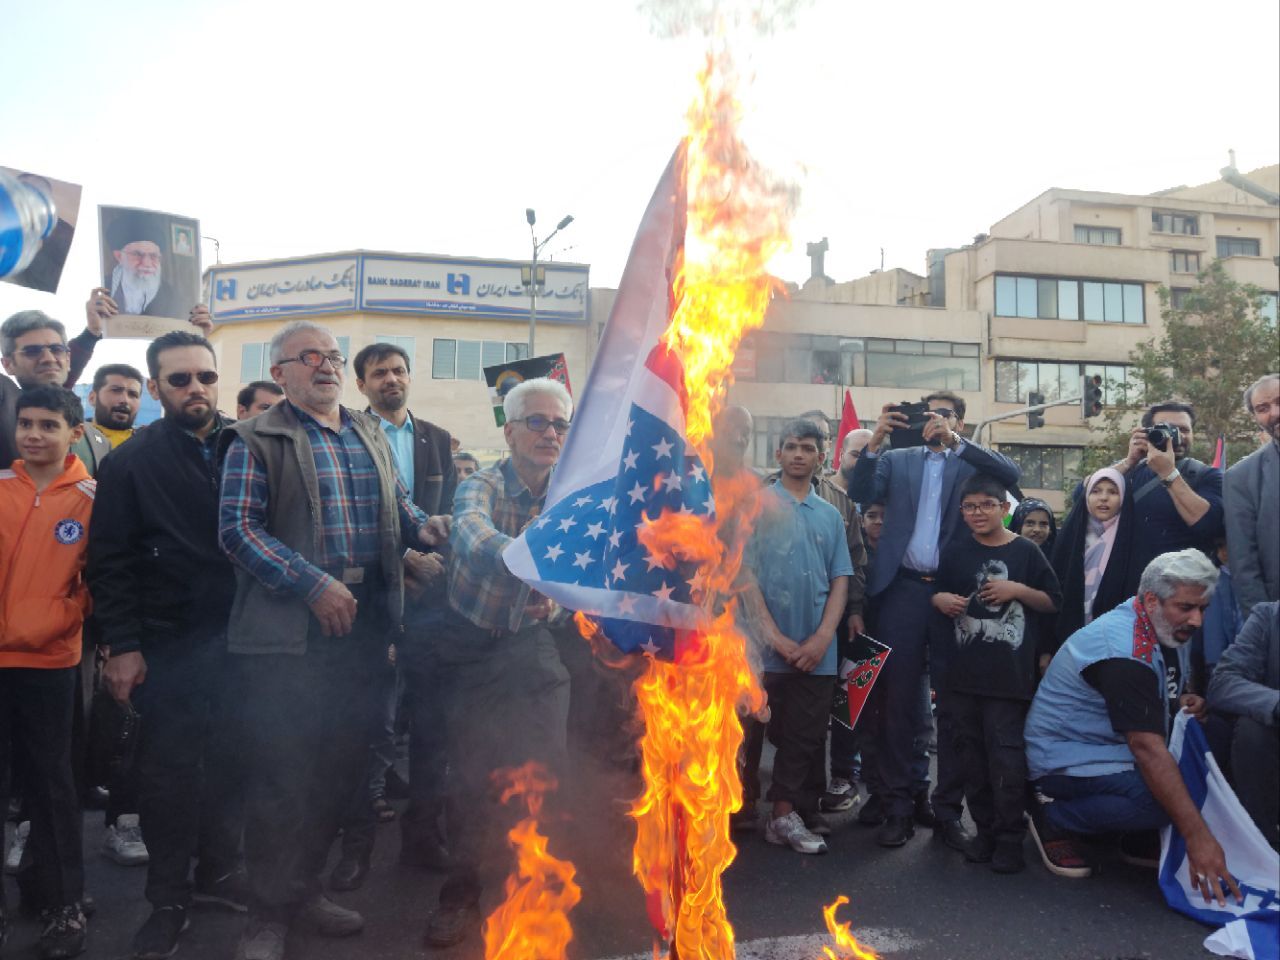 پرچم اسرائیل و آمریکا در میدان انقلاب به آتش کشیده شد+ تصاویر